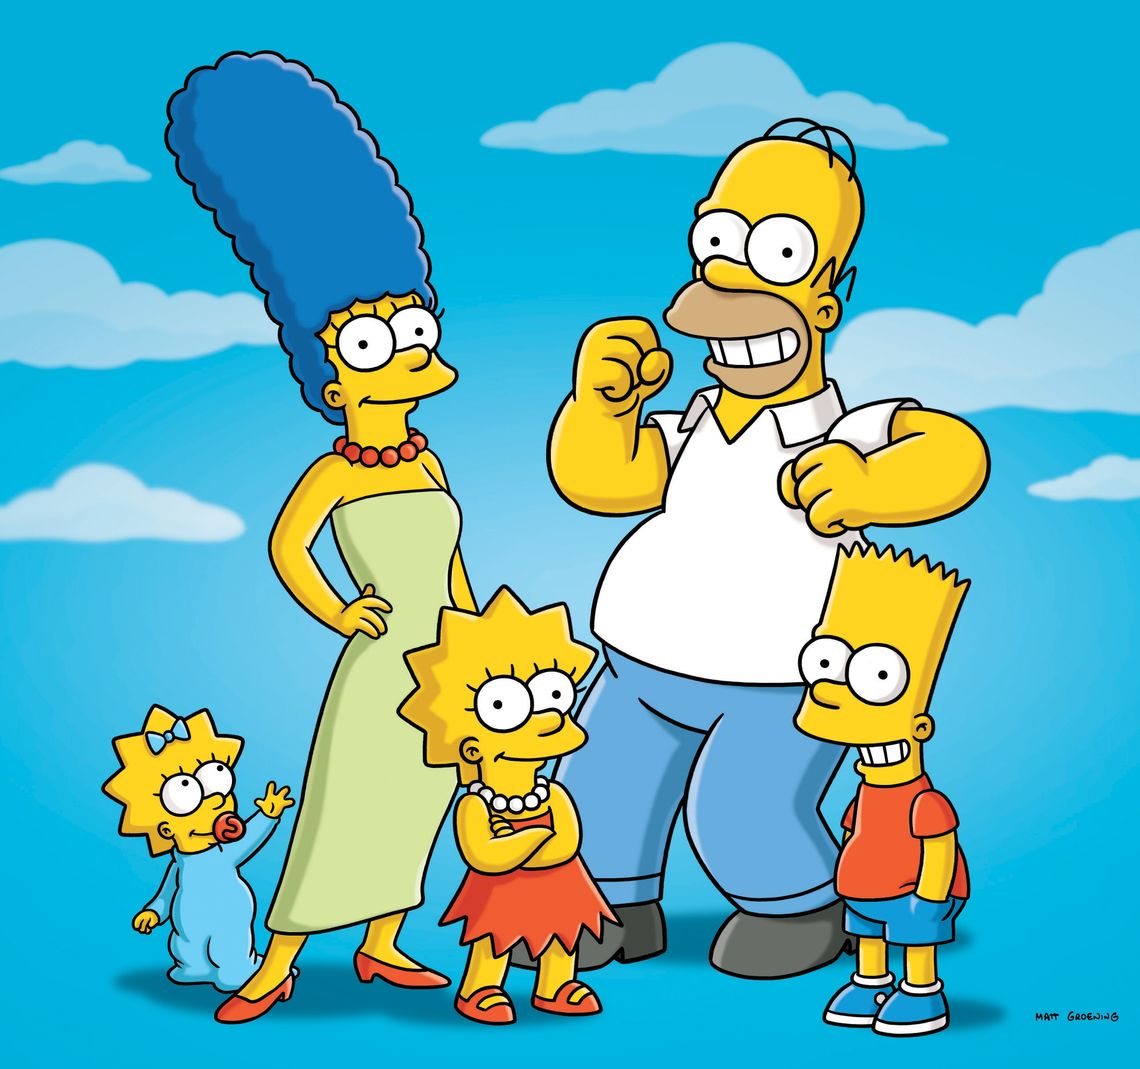 La familia Simpson es considerada, para los norteamericanos, de clase media.